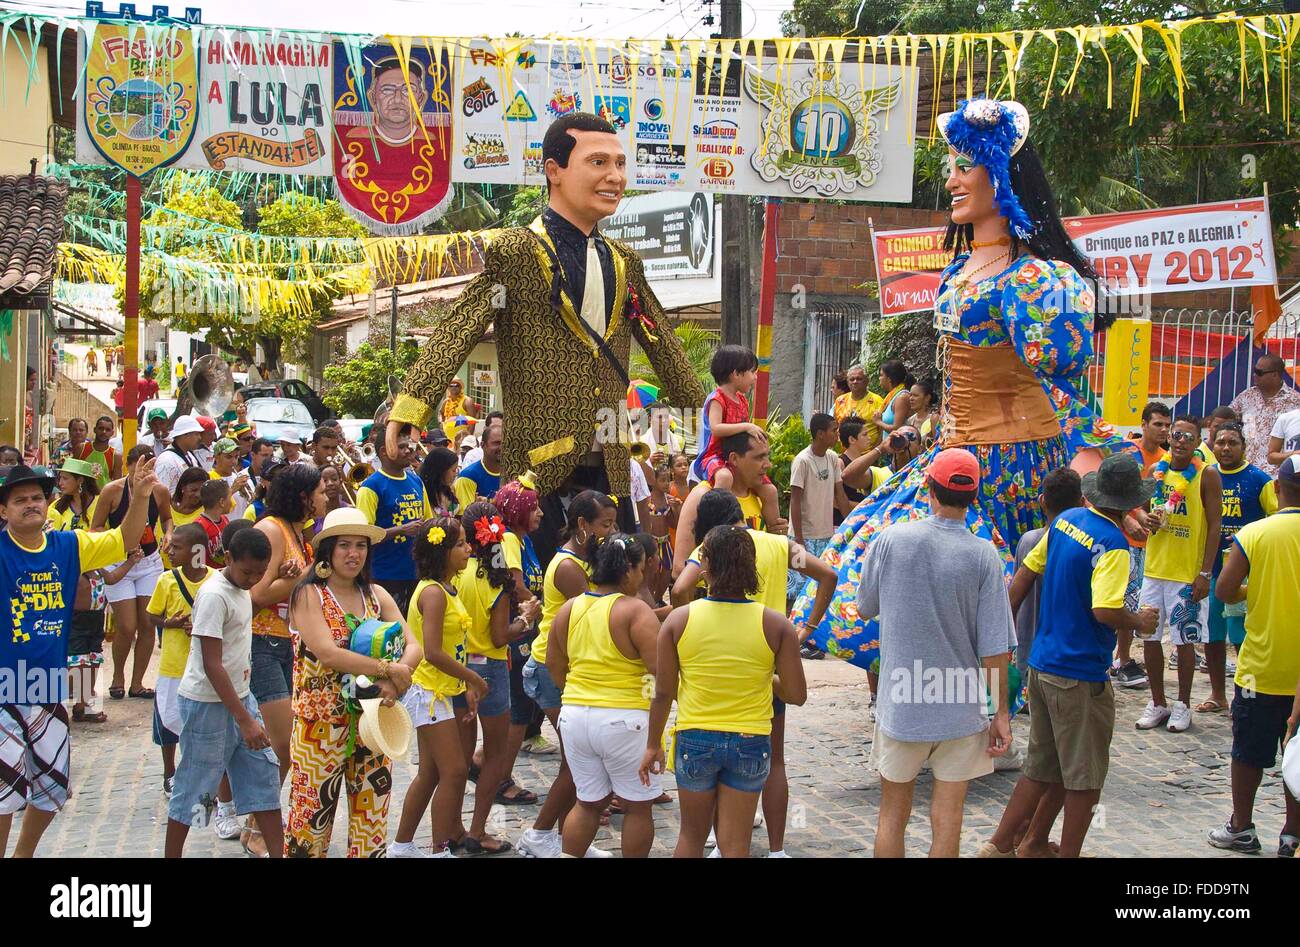 Des marionnettes géantes défilent dans la foule lors des célébrations du carnaval d'Olinda, 22 février 2010 à Olinda, Pernambuco, Brésil. Banque D'Images